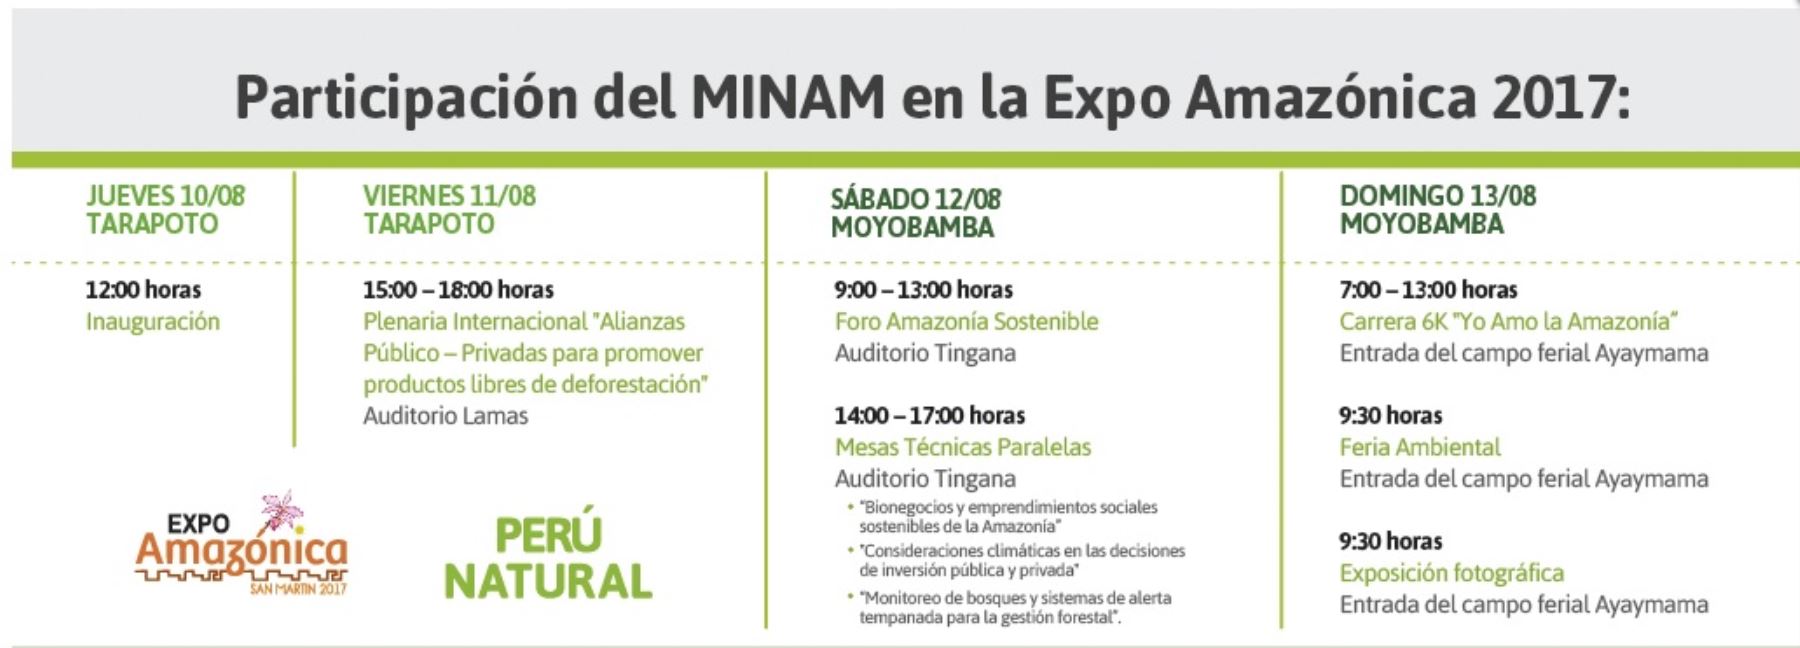 Participación del Ministerio del Ambiente en la Expo Amazónica 2017, en la región San Martín